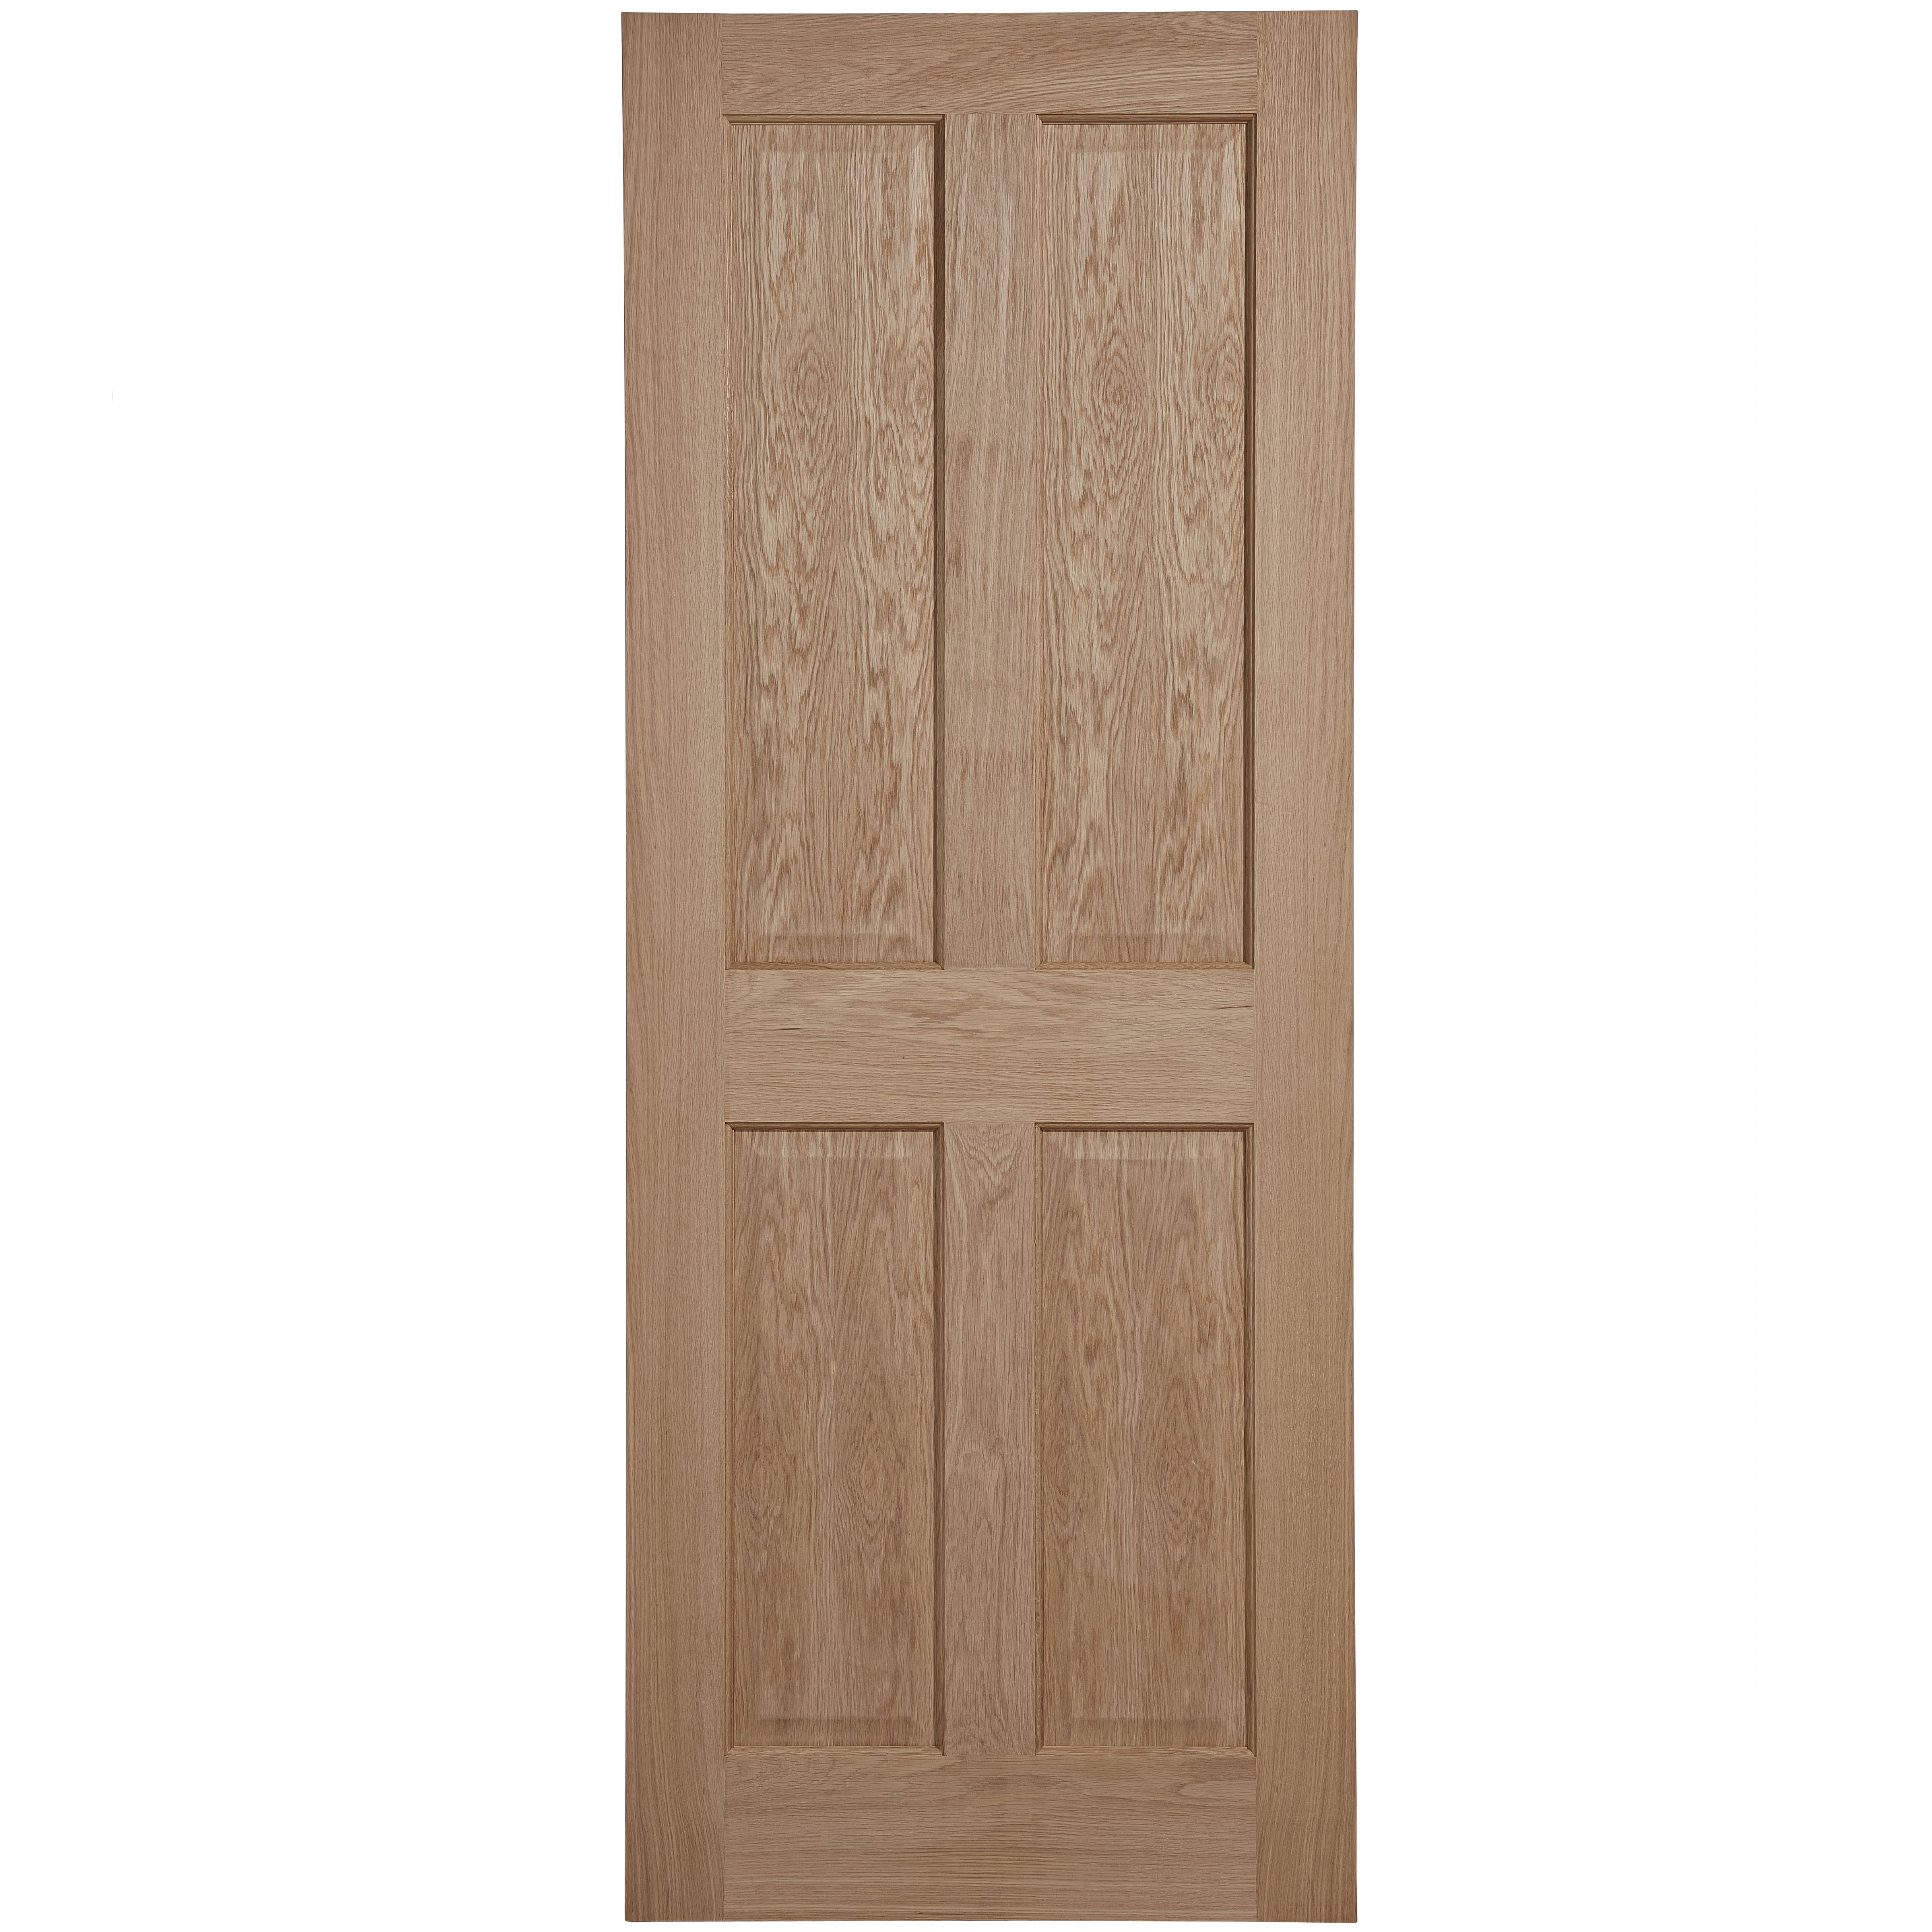 4 panel Unglazed Oak veneer Internal Fire door, (H)1981mm (W)762mm (T)44mm